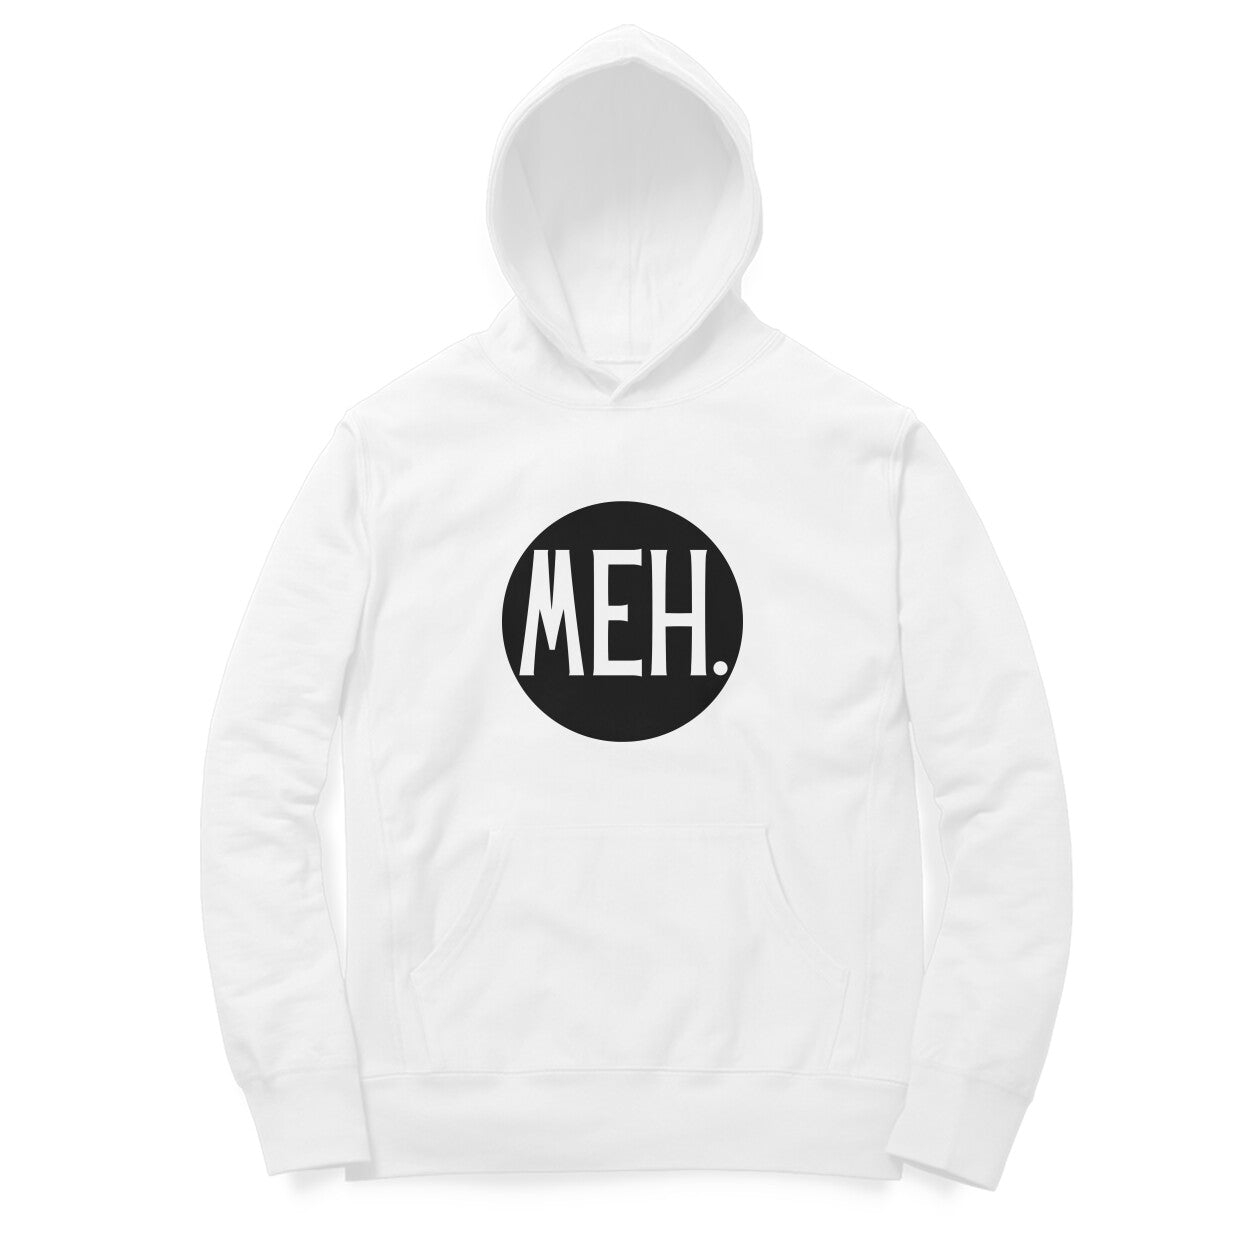 Meh' hoodie